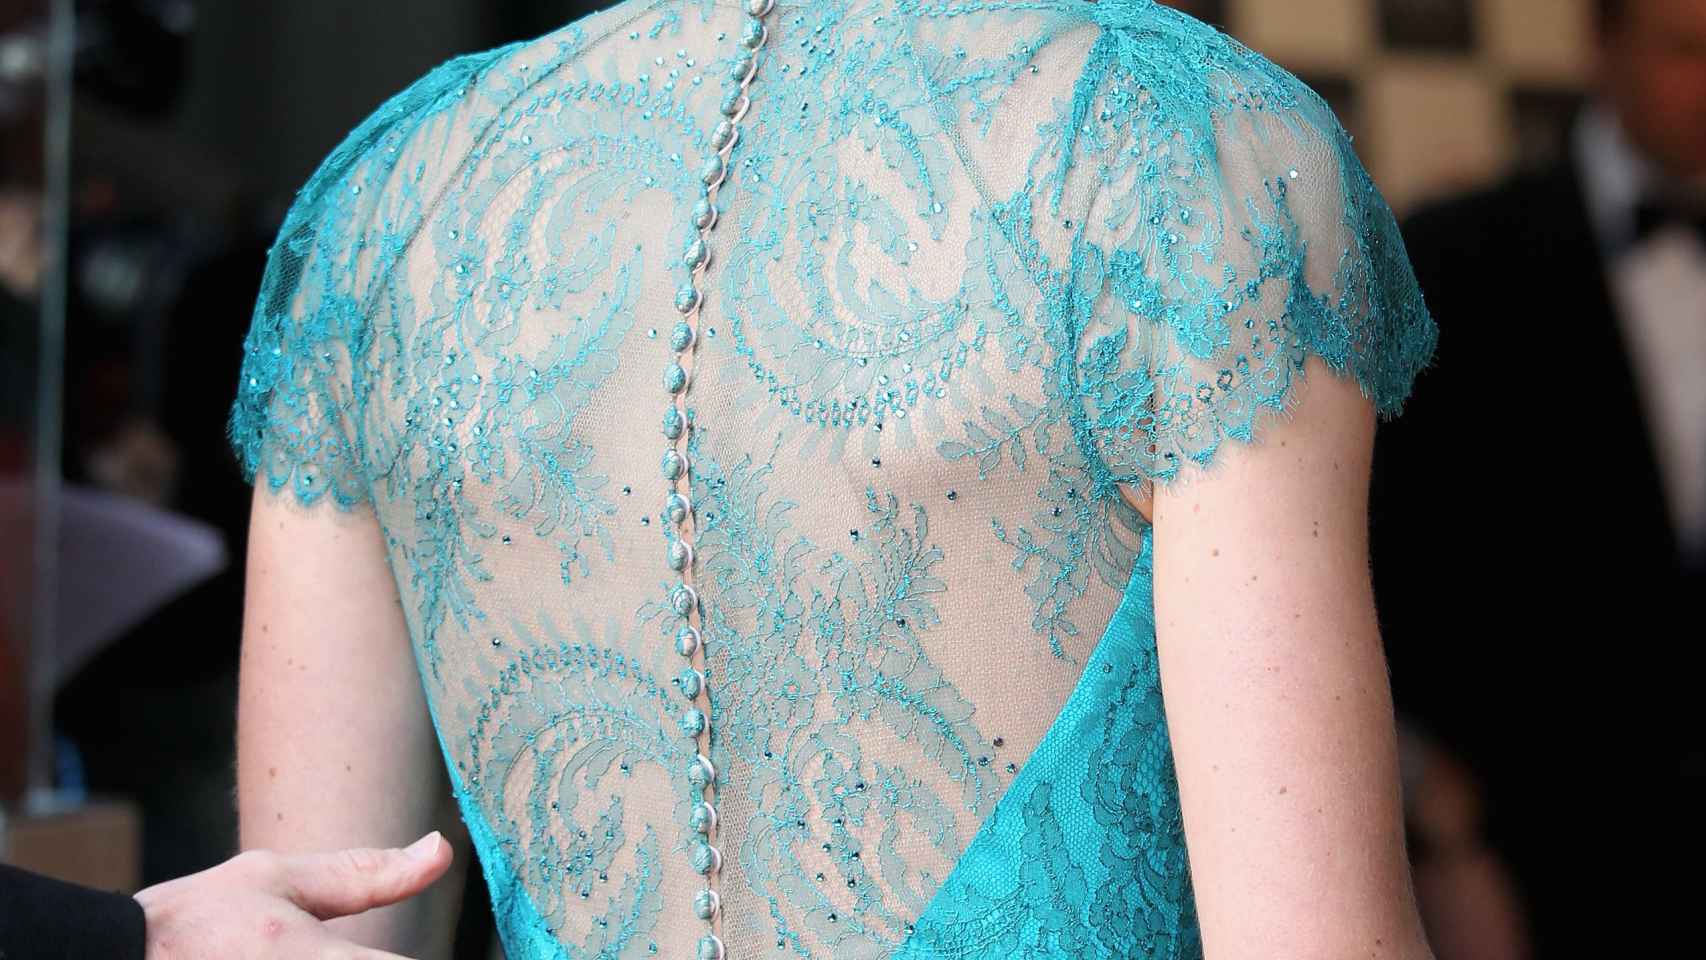 Espalda de encaje del vestido azul cerceta que Kate Middleton llevó.